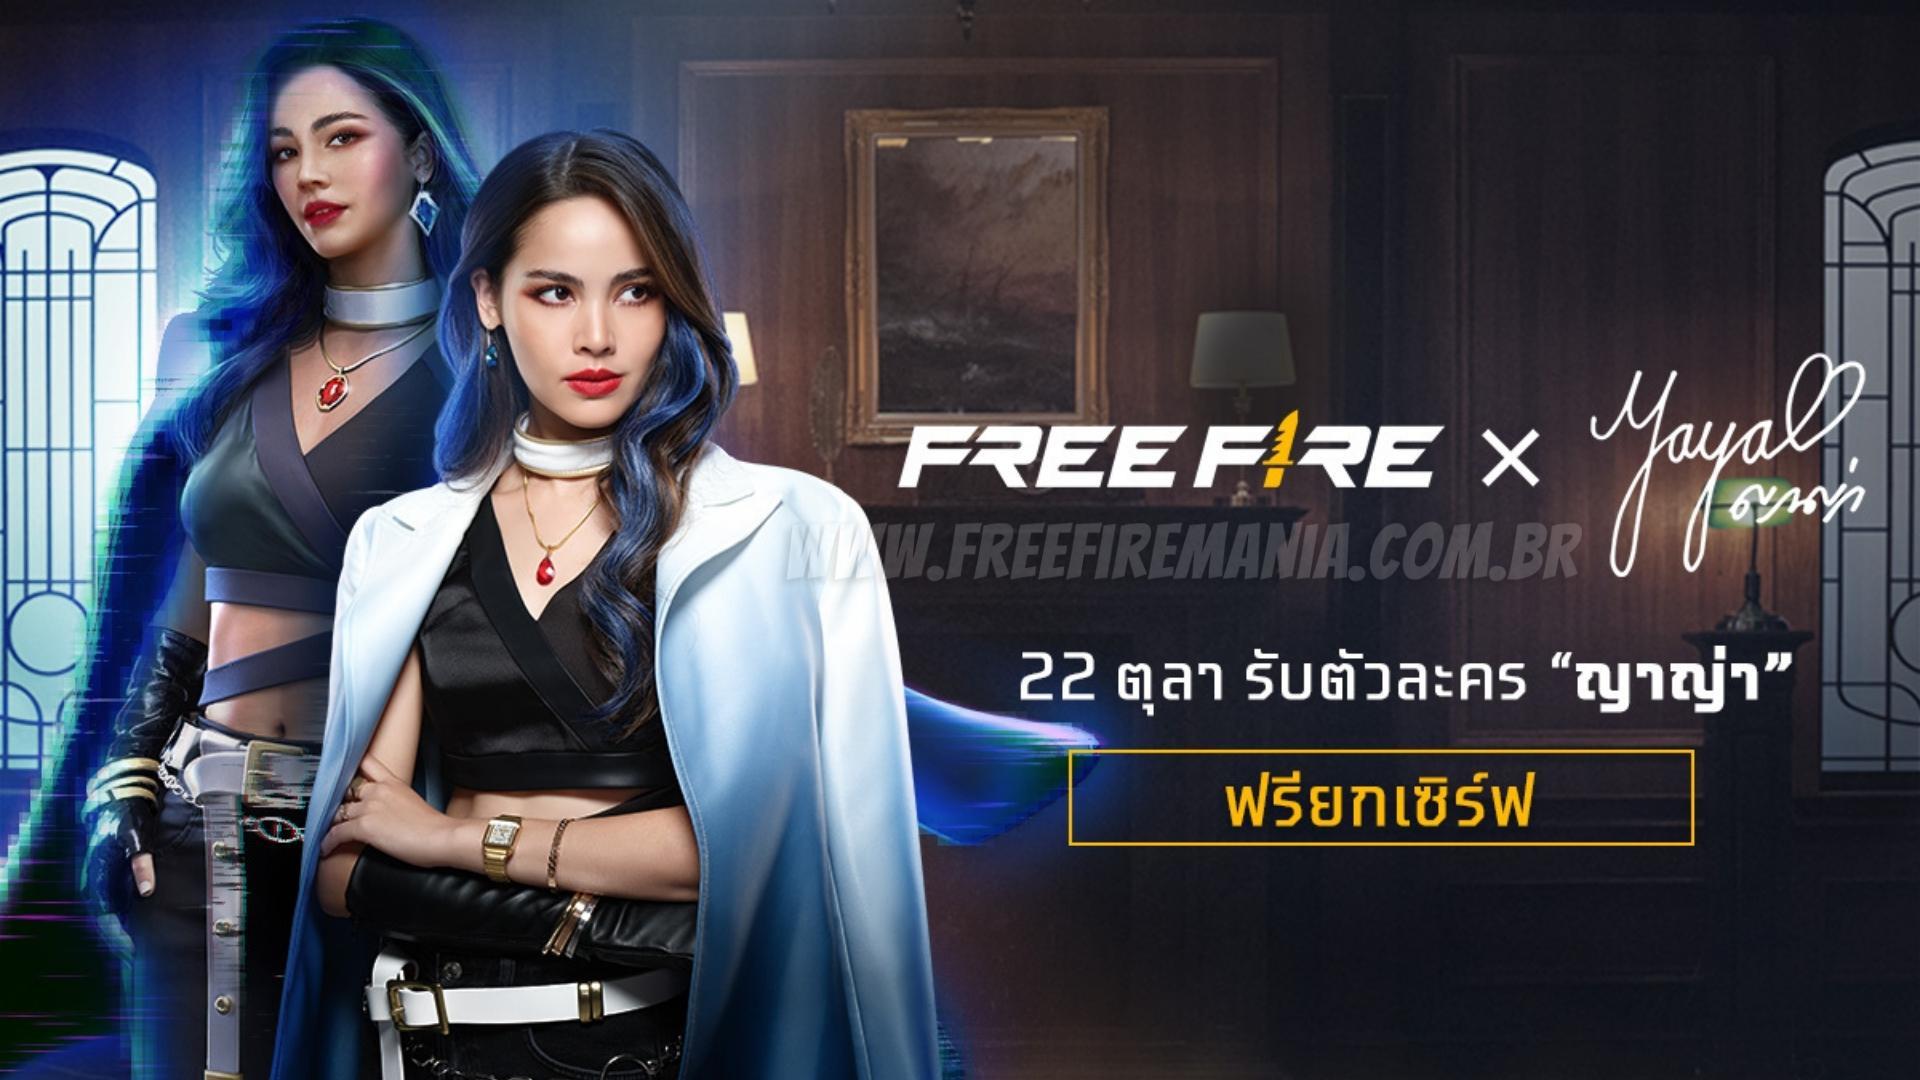 Luna Free Fire: conoce a la artista tailandesa que dio vida al nuevo personaje